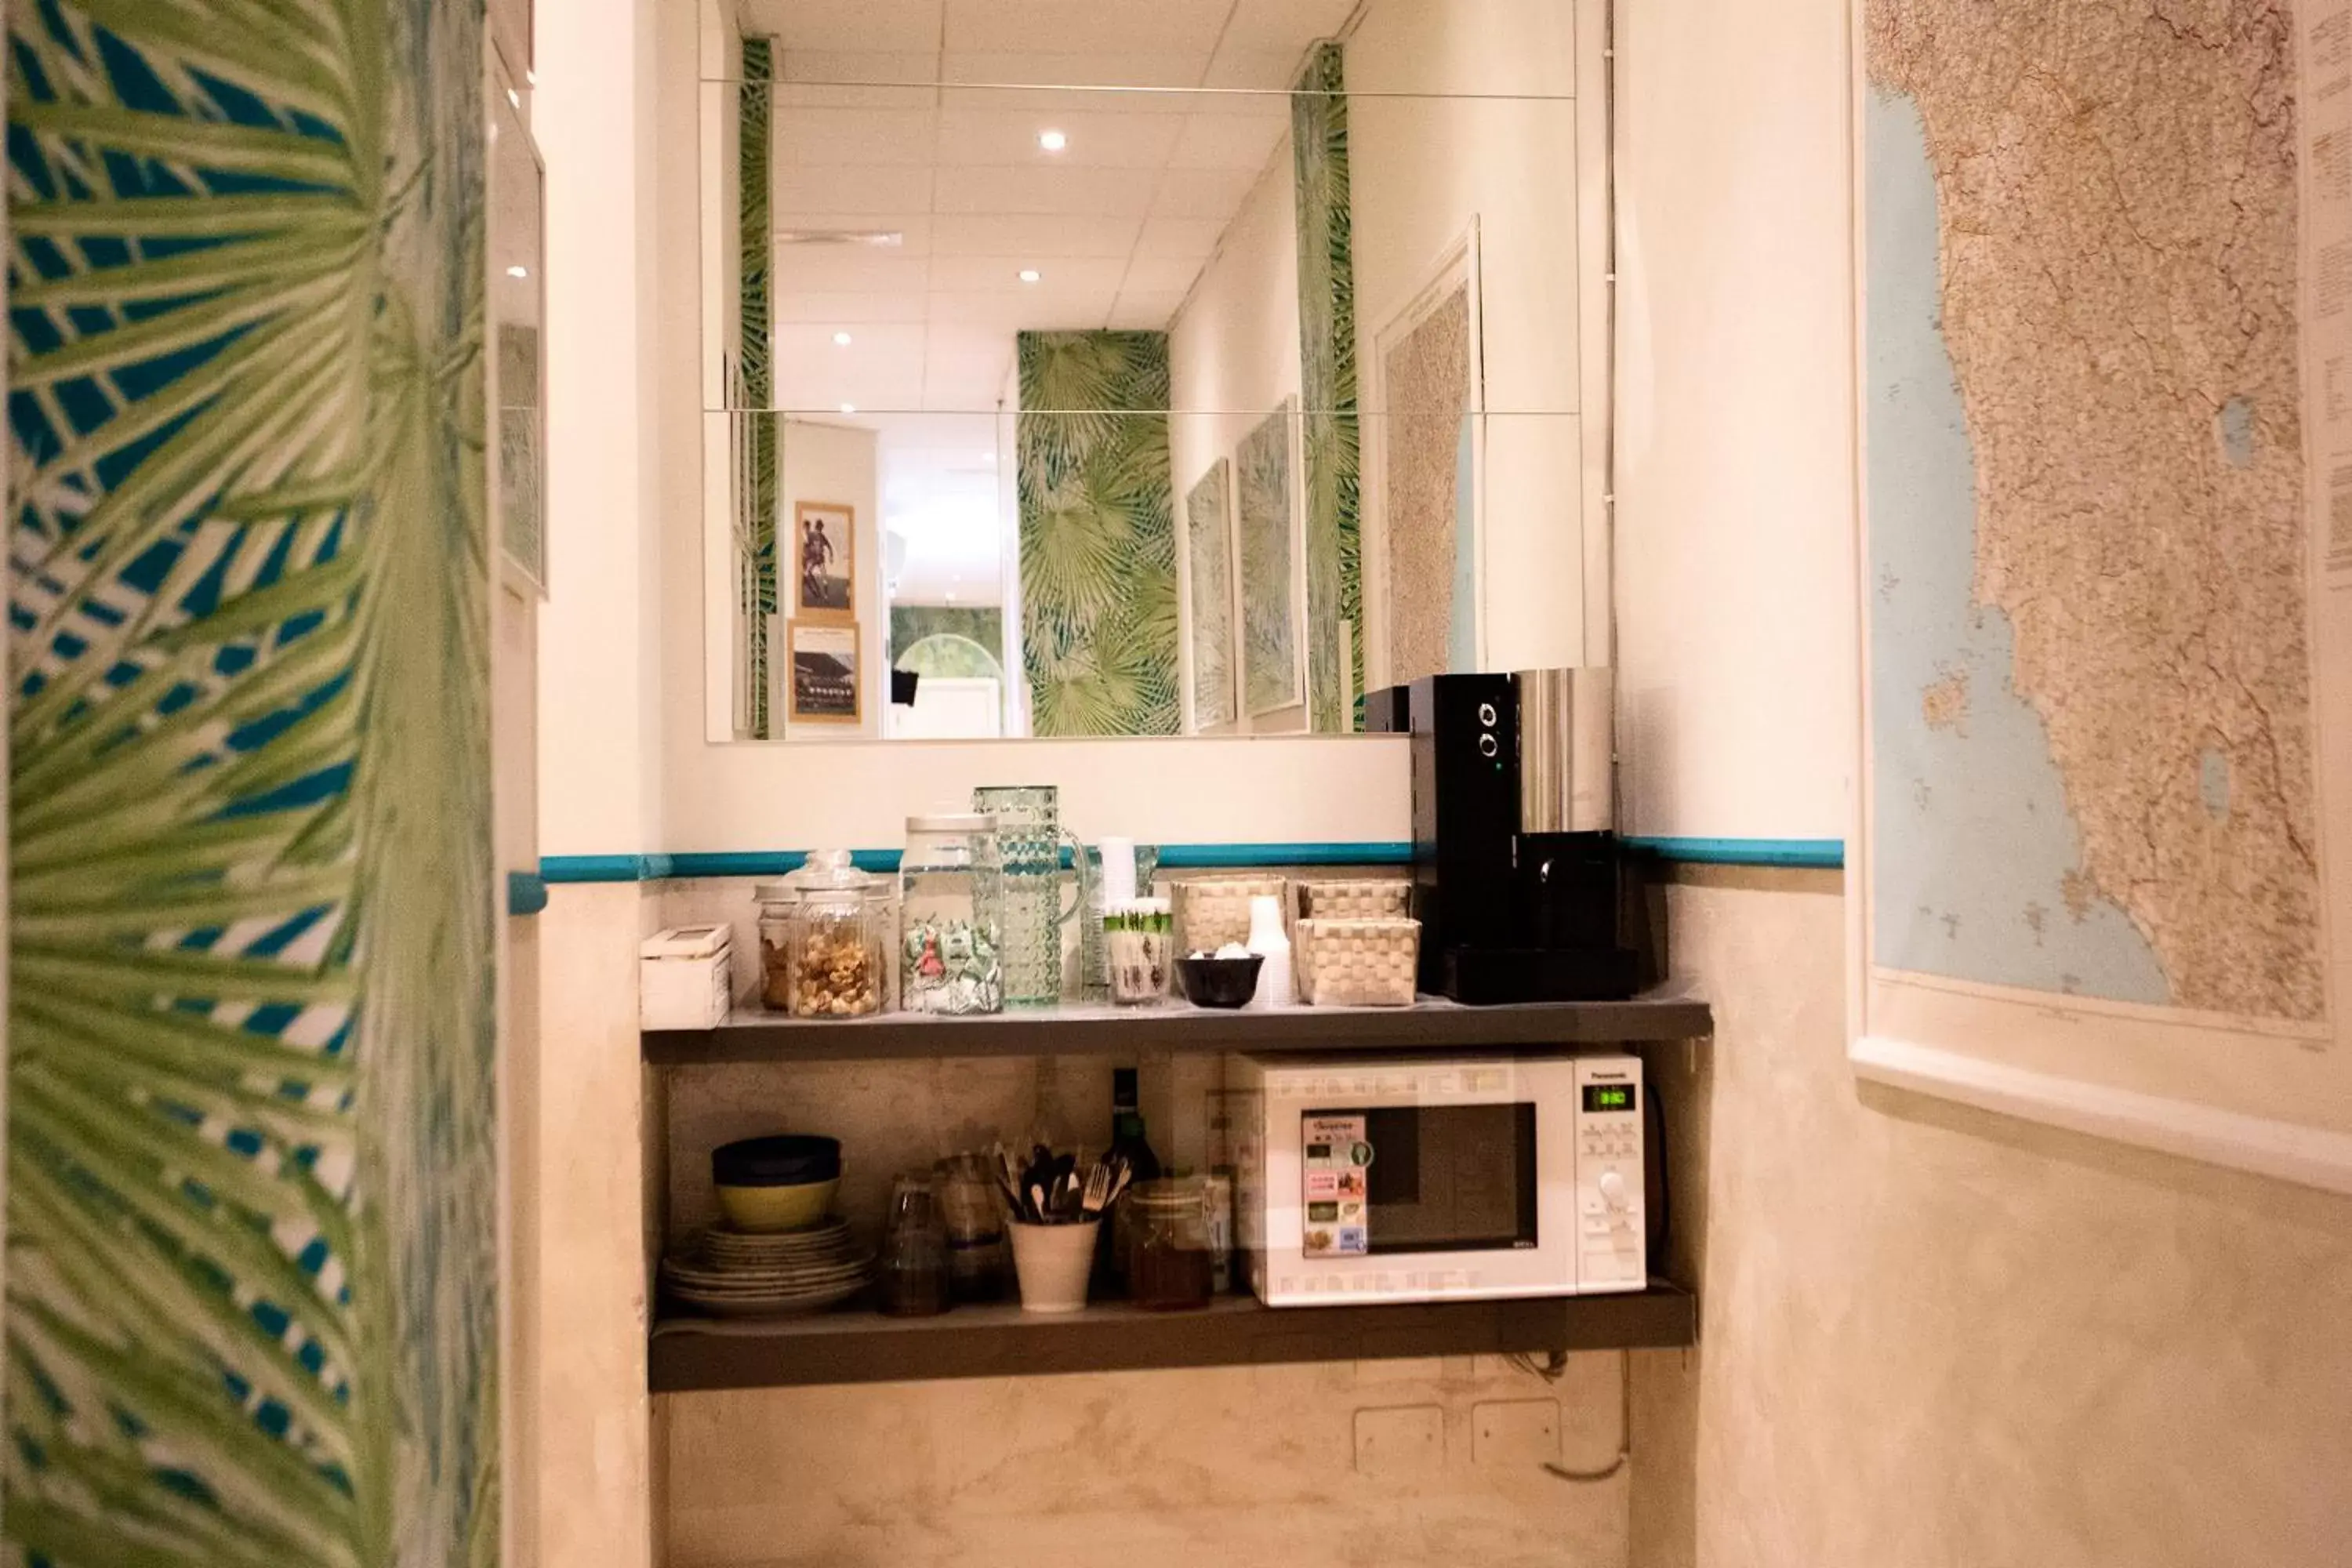 Coffee/tea facilities, Bathroom in Hotel Bencidormi